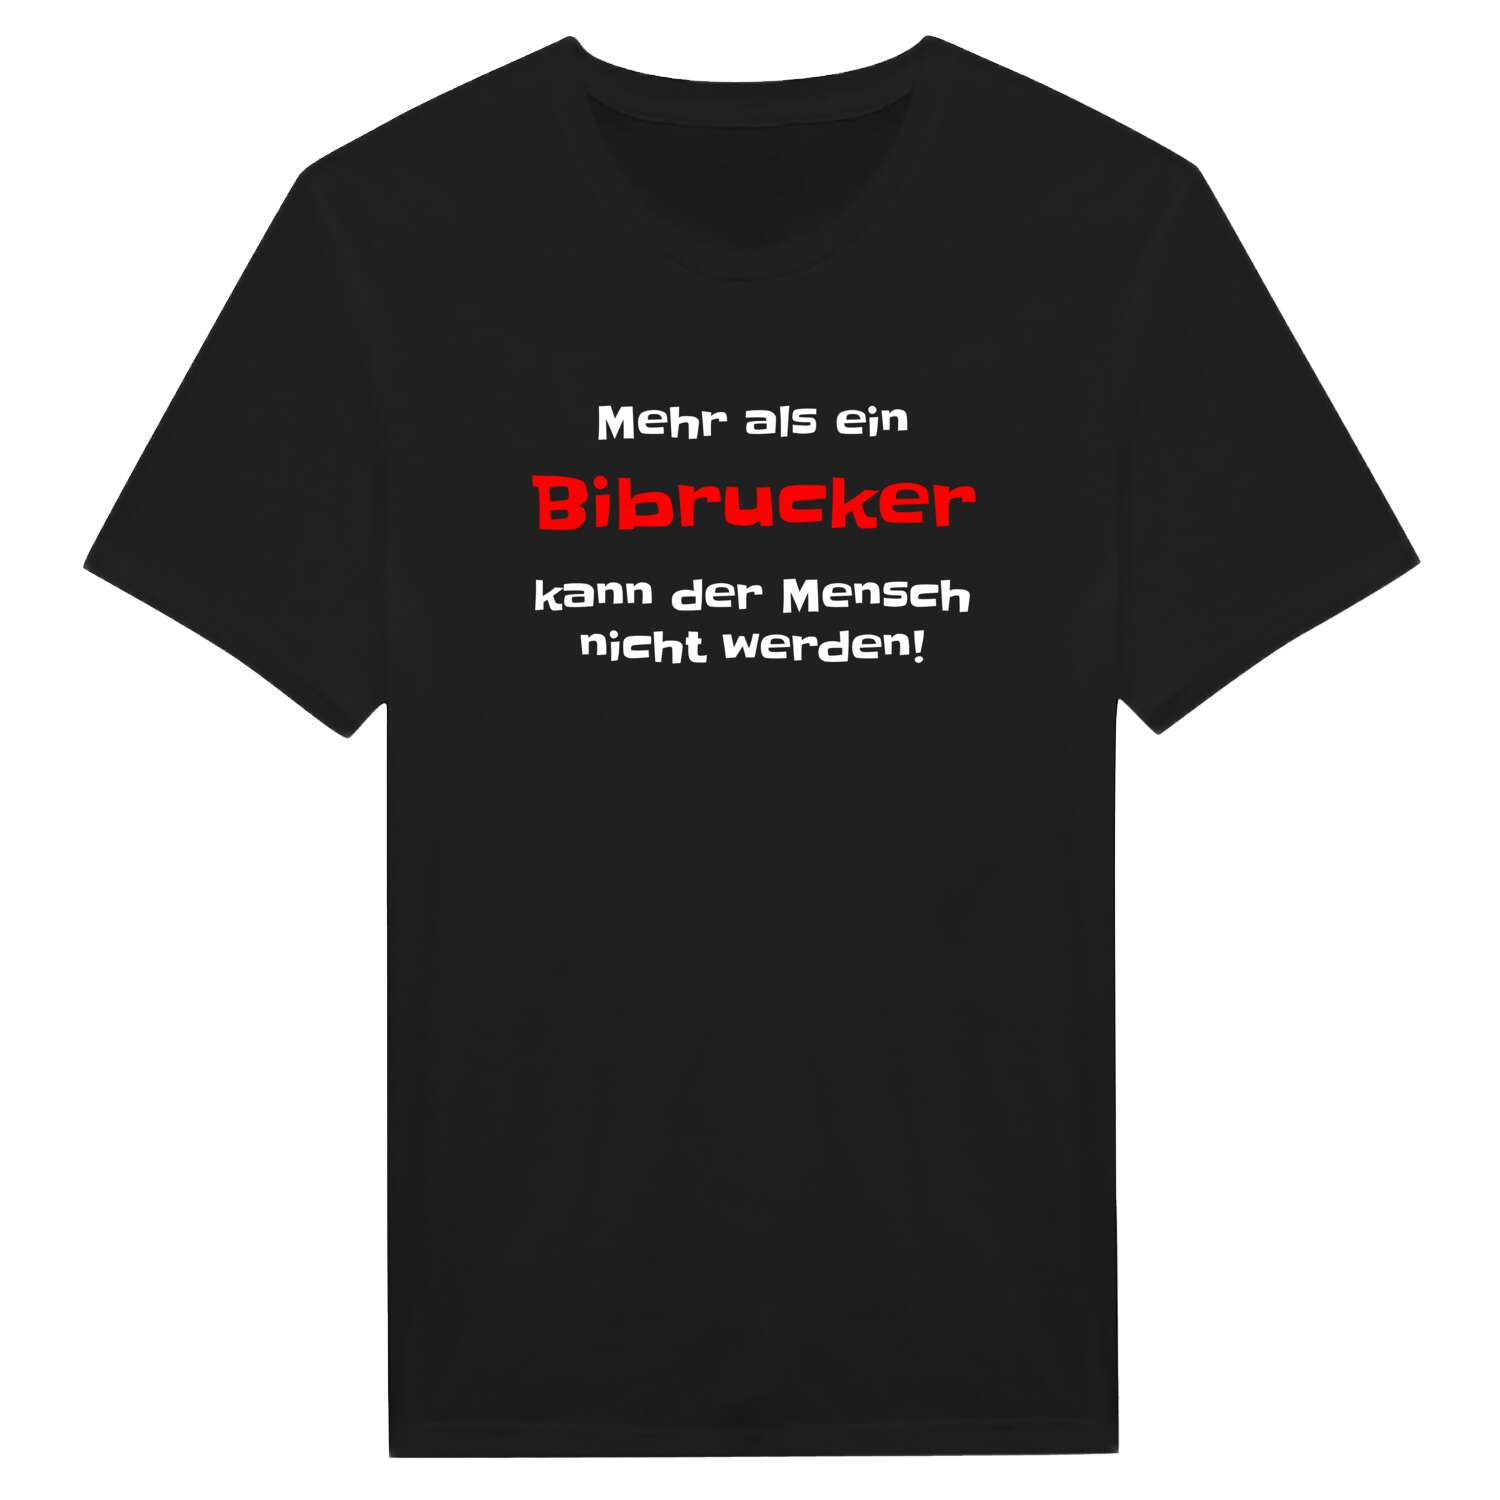 Bibruck T-Shirt »Mehr als ein«